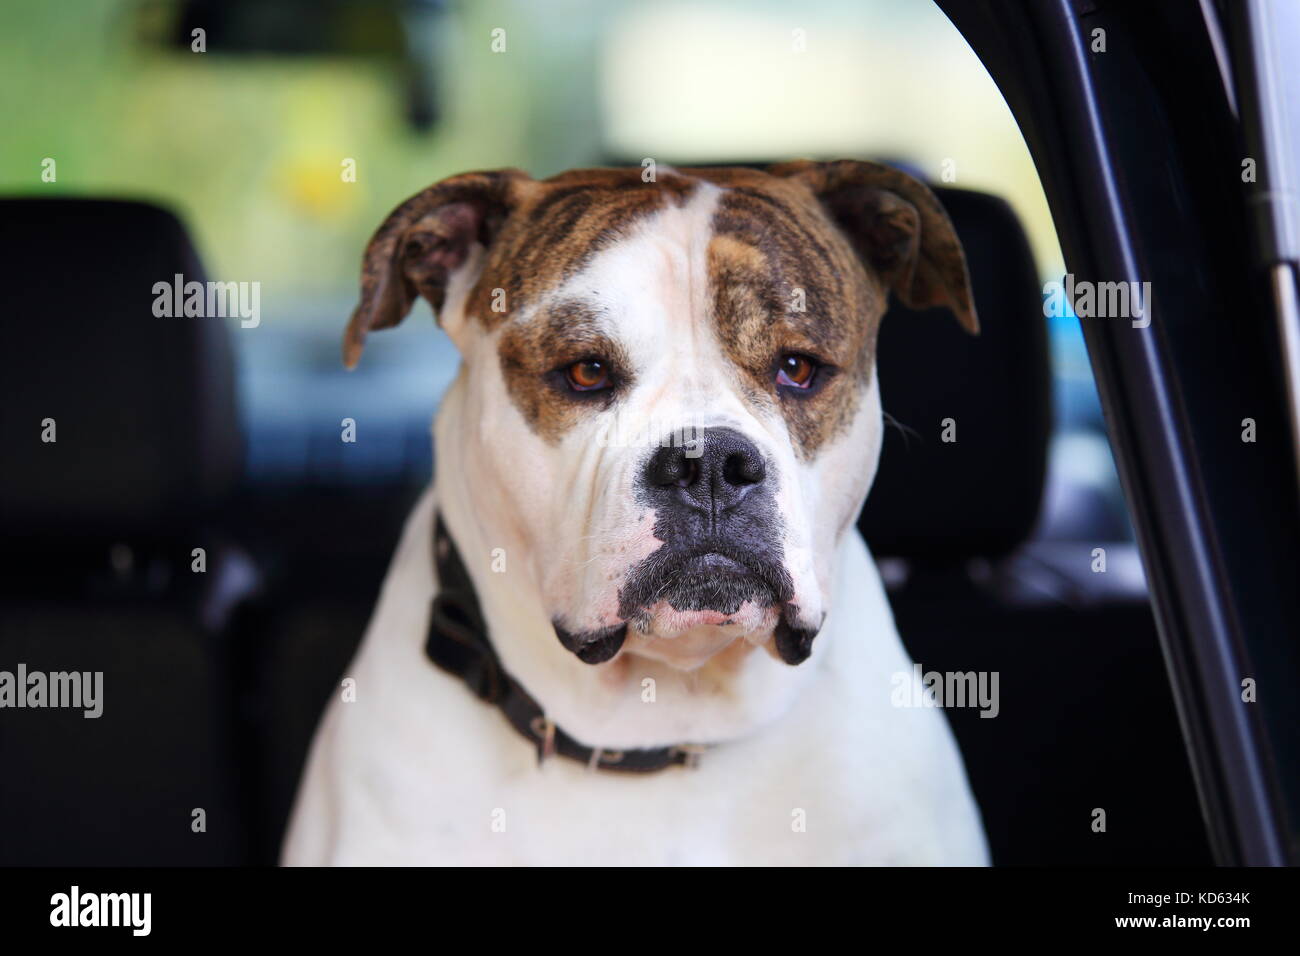 Grave bulldog americano en coche. Cabeza de bulldog americano blanco cerca. Foto de stock